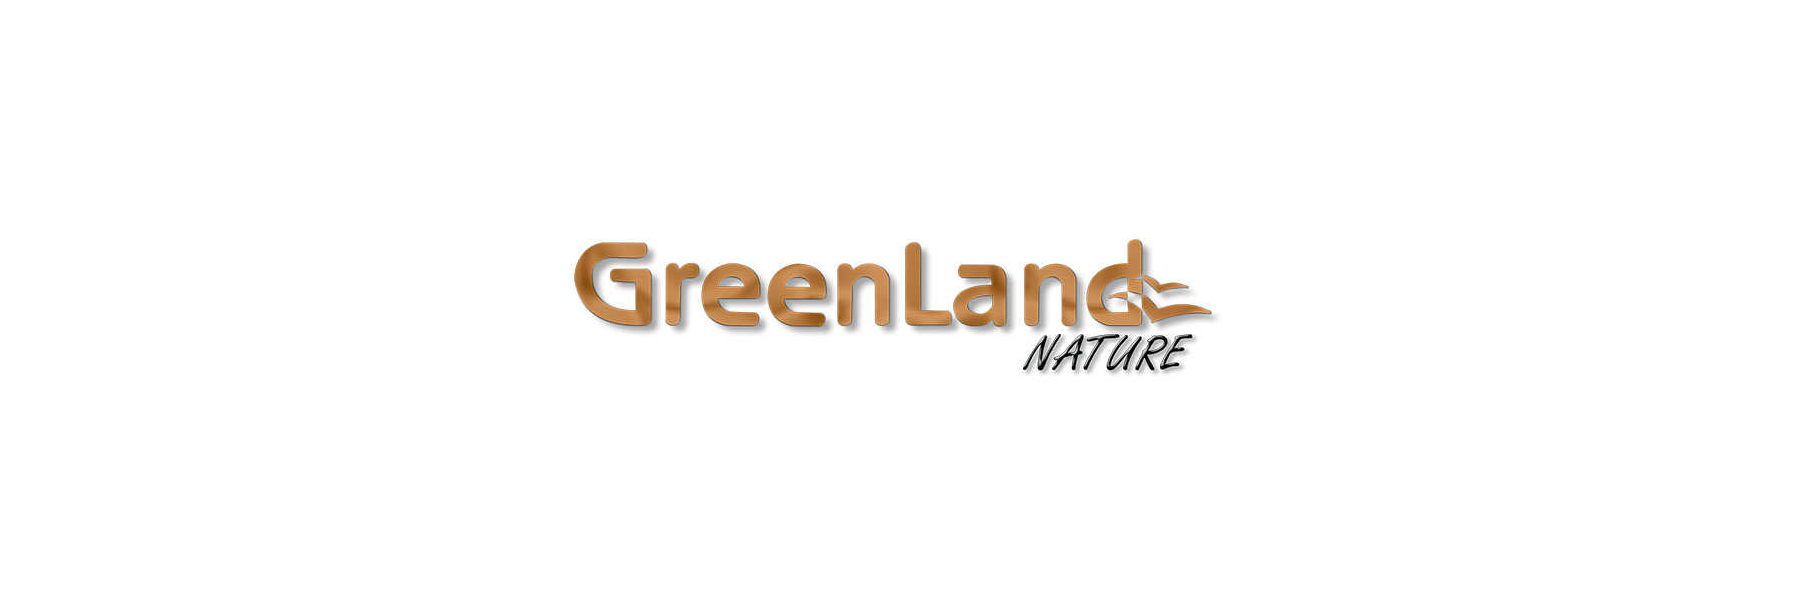 Gel Greenland Lederwaren - Geldboerse Nature natürlich Online gegerbt